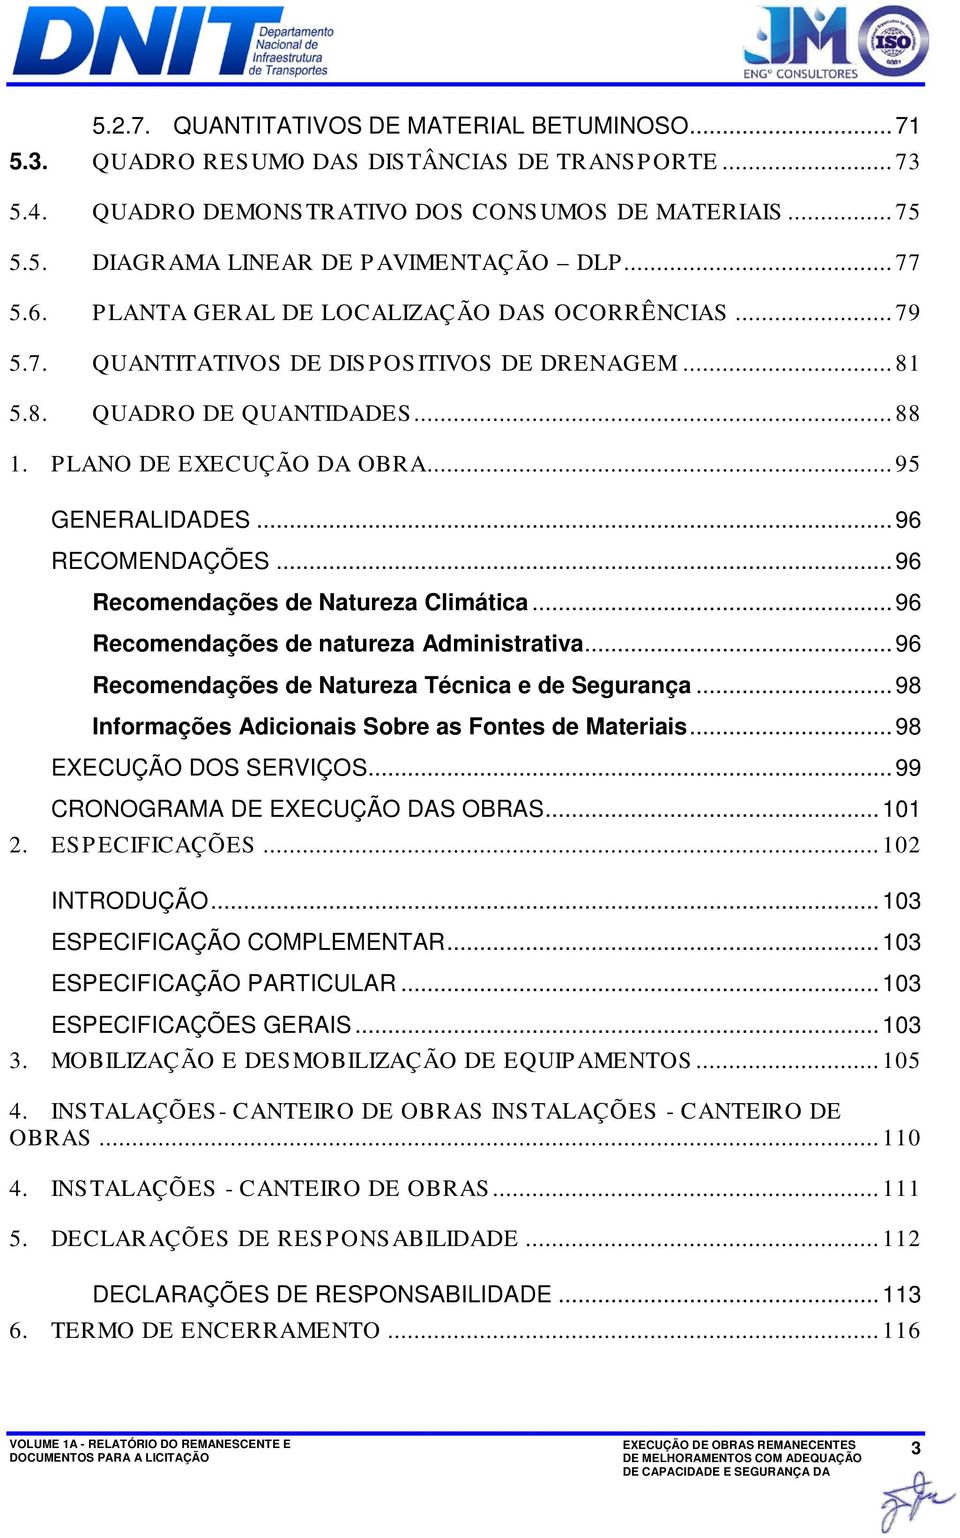 .. 96 RECOMENDAÇÕES... 96 Recomendações de Natureza Climática... 96 Recomendações de natureza Administrativa... 96 Recomendações de Natureza Técnica e de Segurança.